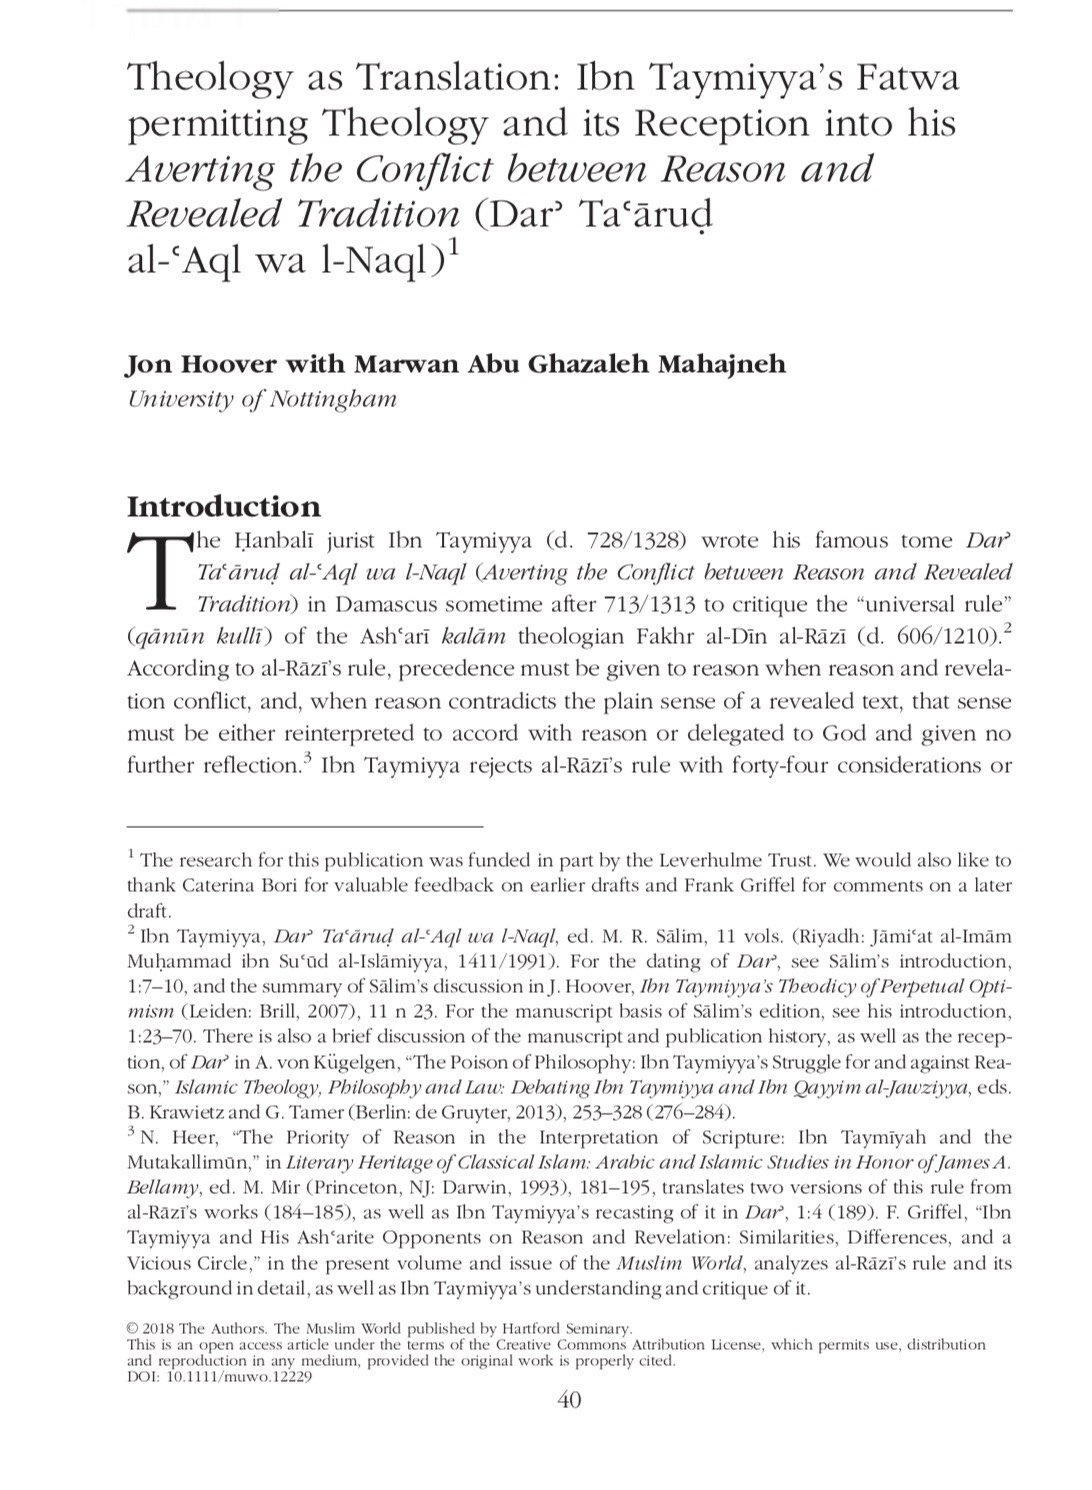 انجاز عالمي للفحماوي د. ابو غزالة في ترجمة الكتب الاسلامية‎-0